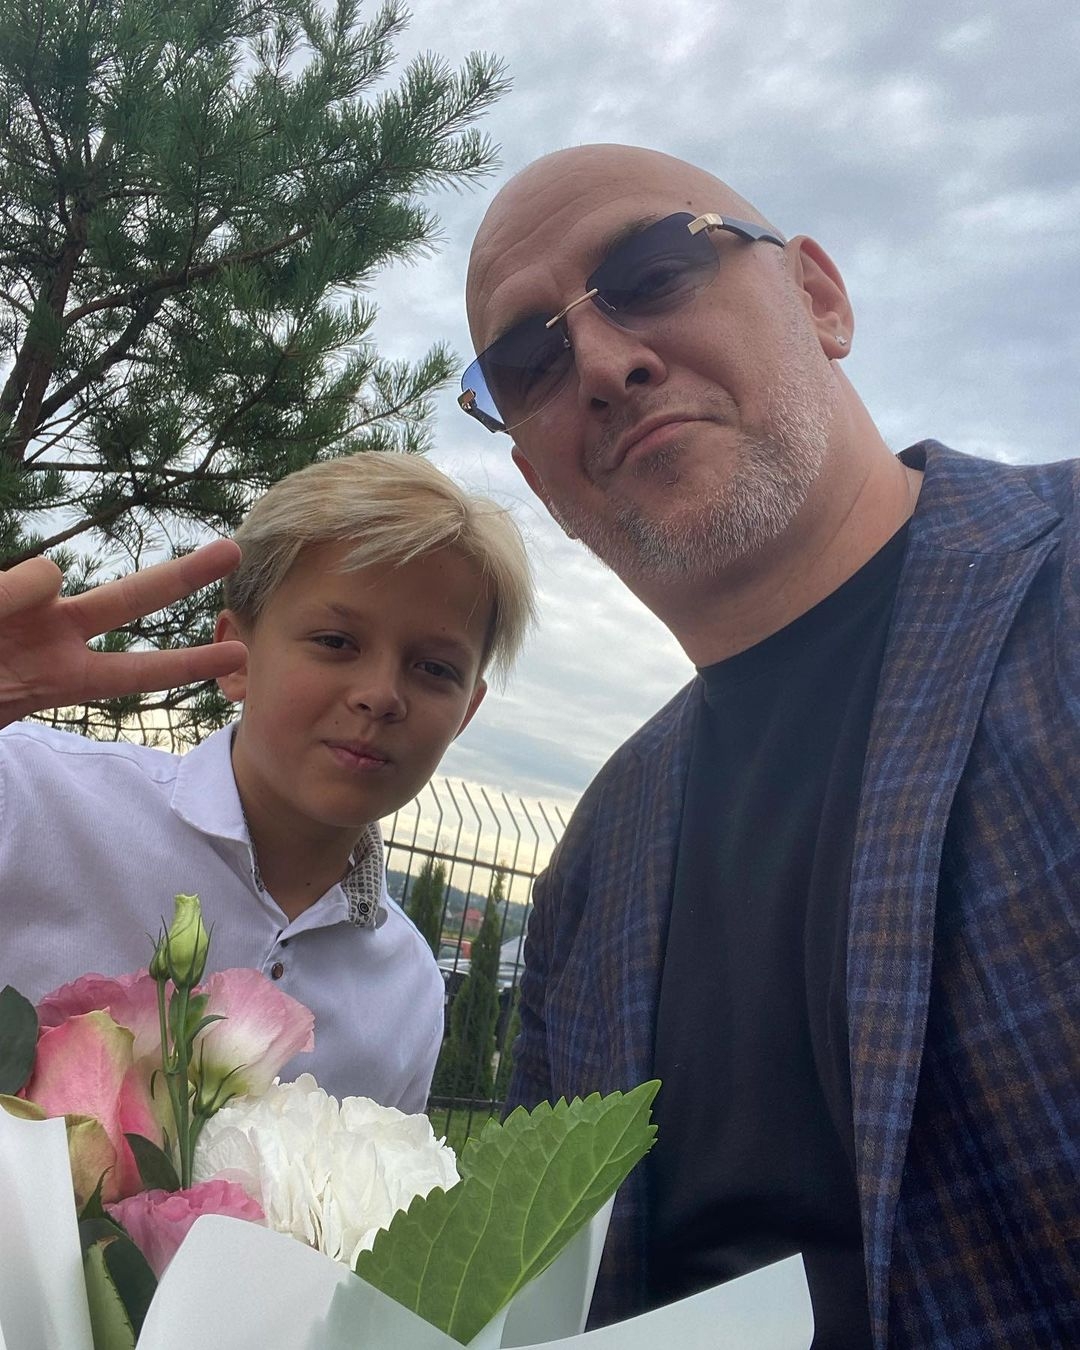 Instagram-репортаж: як українські знаменитості провели дітей у школу